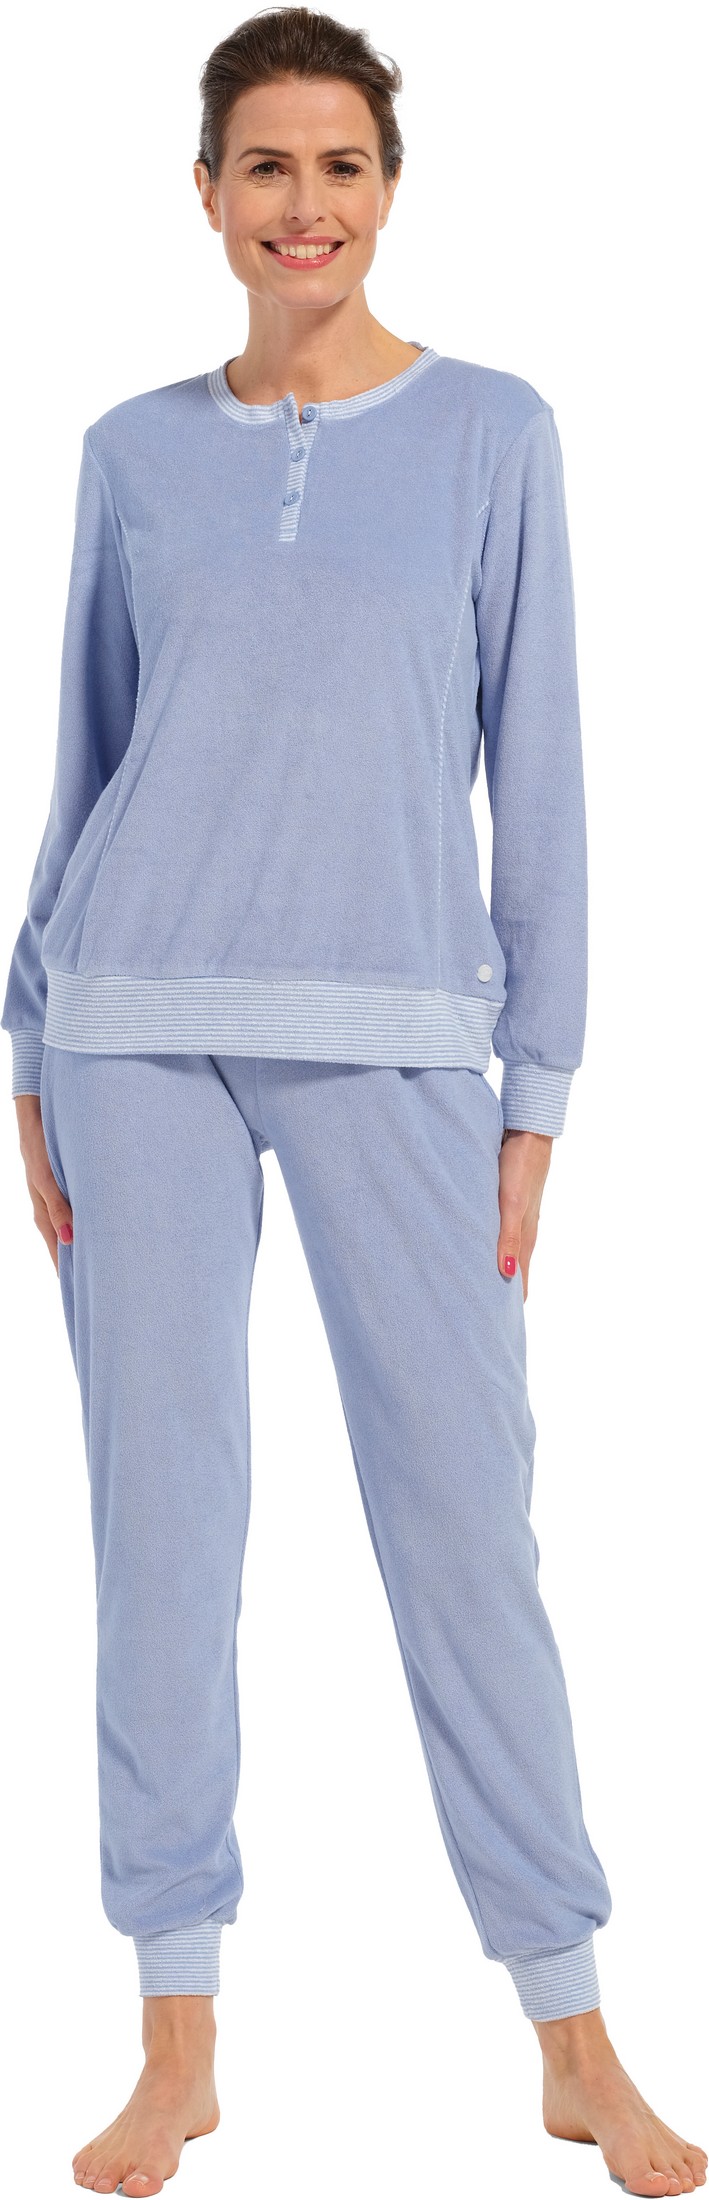 Pastunette dames badstof pyjama 20232-174-4 - Blauw - 42